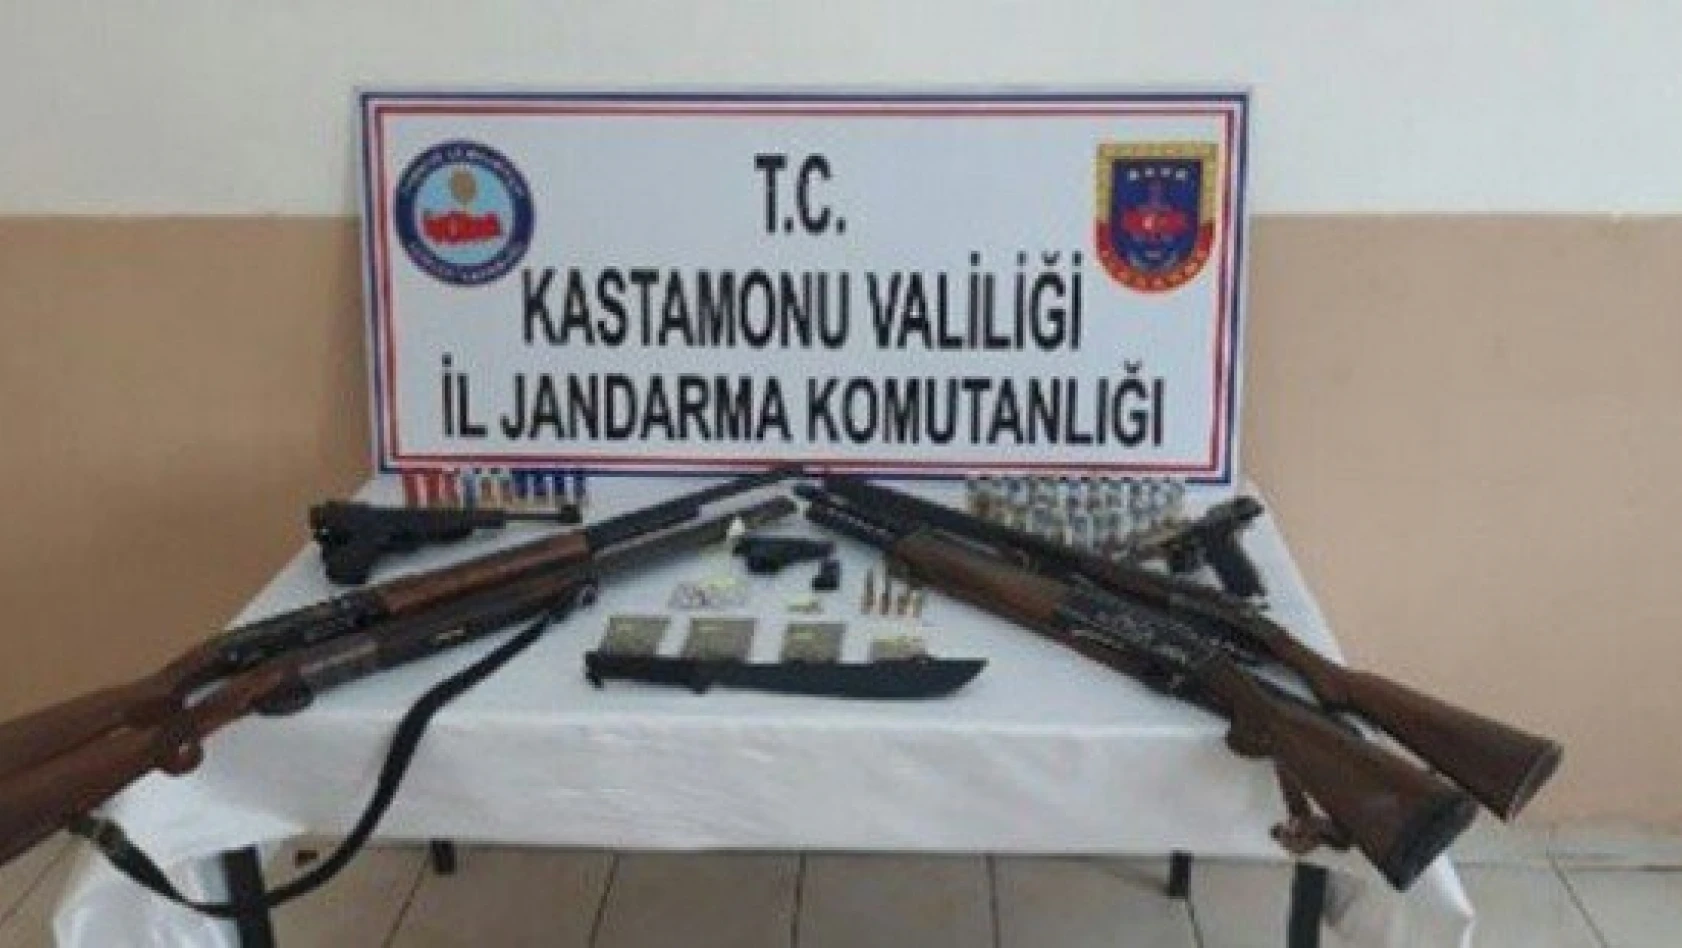 Kastamonu'daki uyuşturucu operasyonlarında 13 kişi tutuklandı